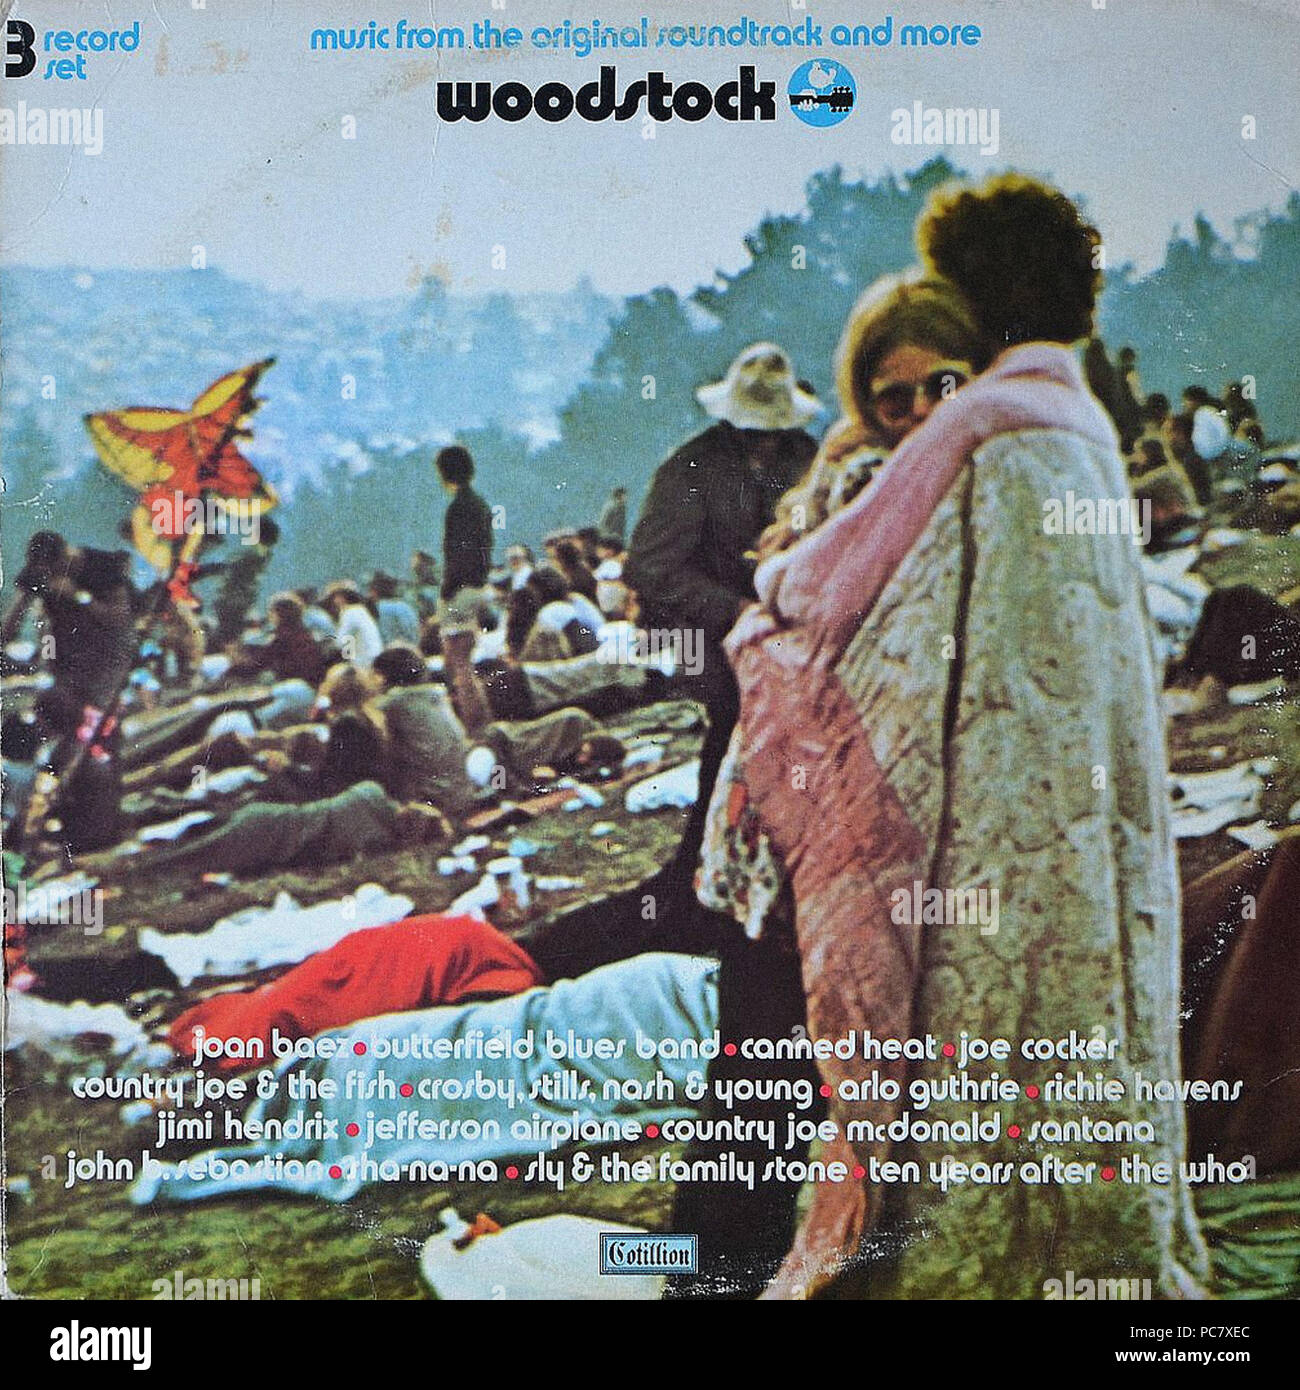 Resultado de imagen para foto portada del album woodstock